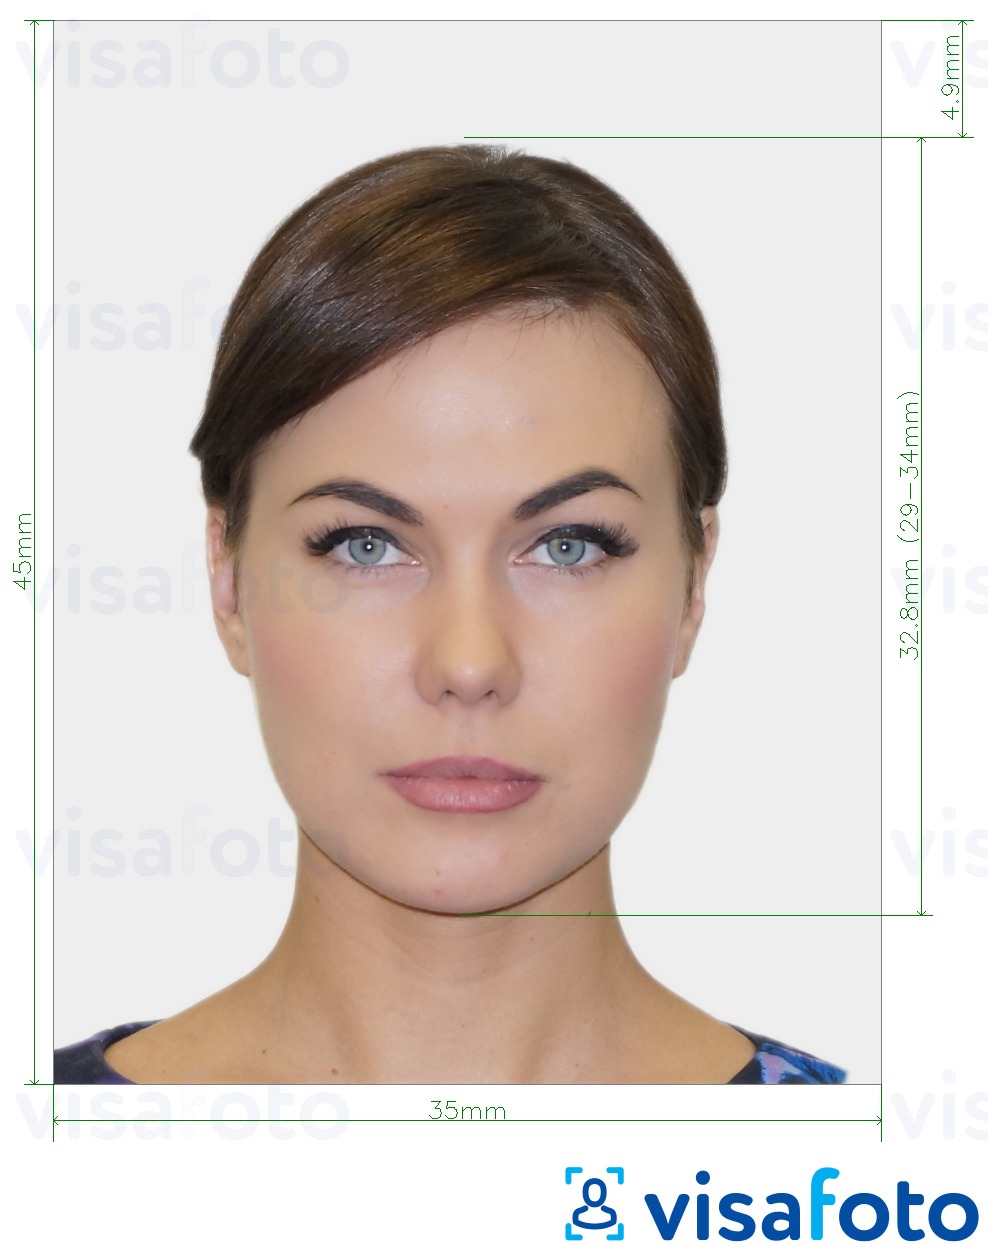 Ejemplo de foto para Visa UK 35x45 mm (3.5x4.5 cm) con la especificación del tamaño exacto